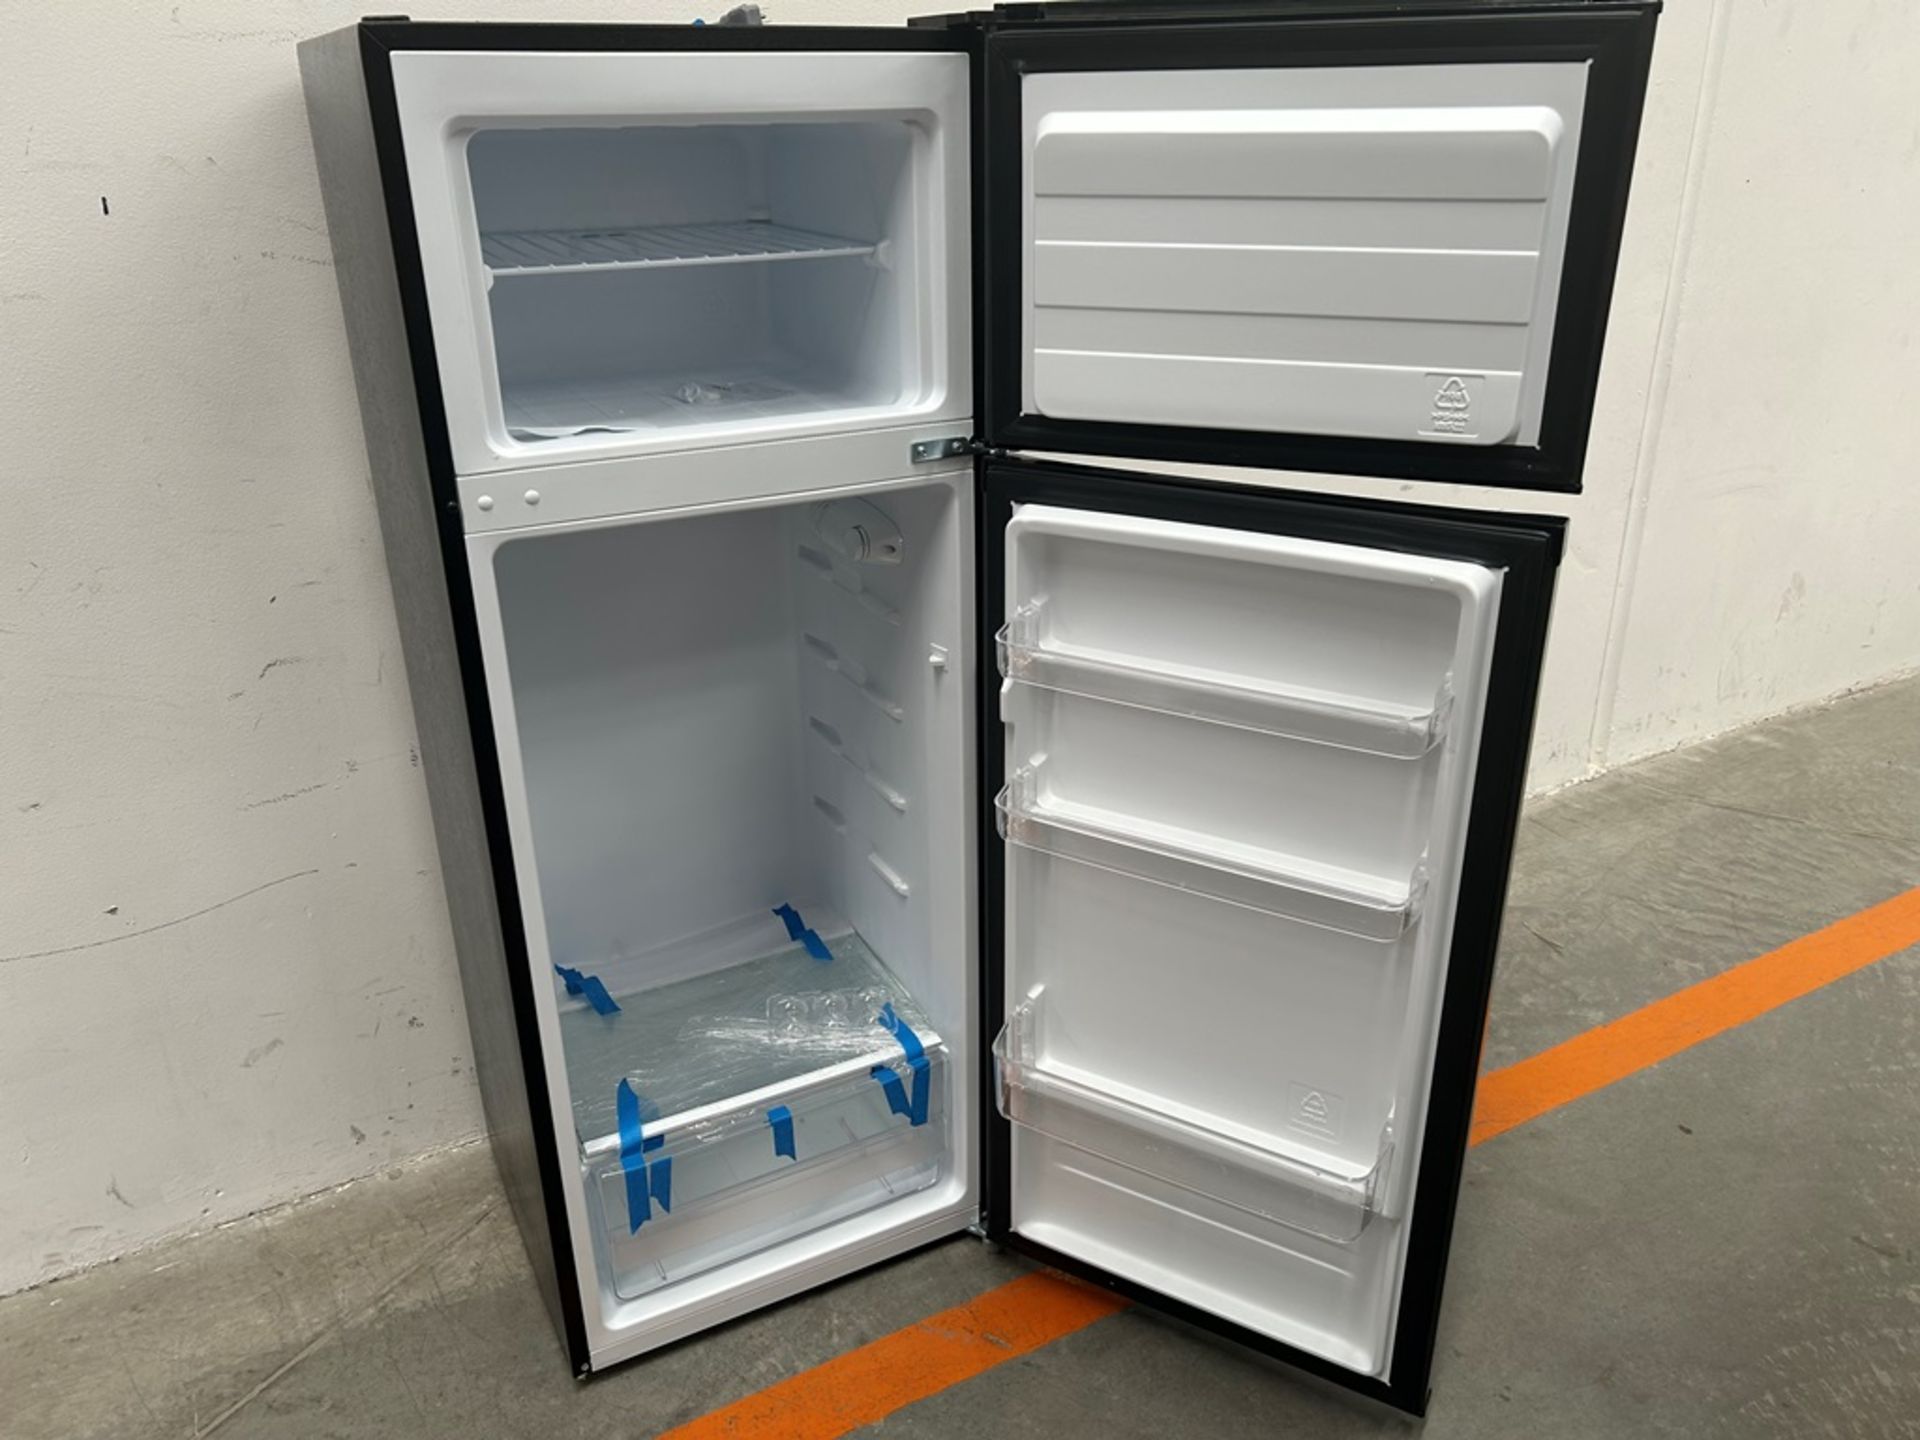 Lote de 1 refrigerador y 1 frigobar contiene:1 refrigerador Marca ATVIO, Modelo AT73TMS, Serie 1065 - Image 5 of 20